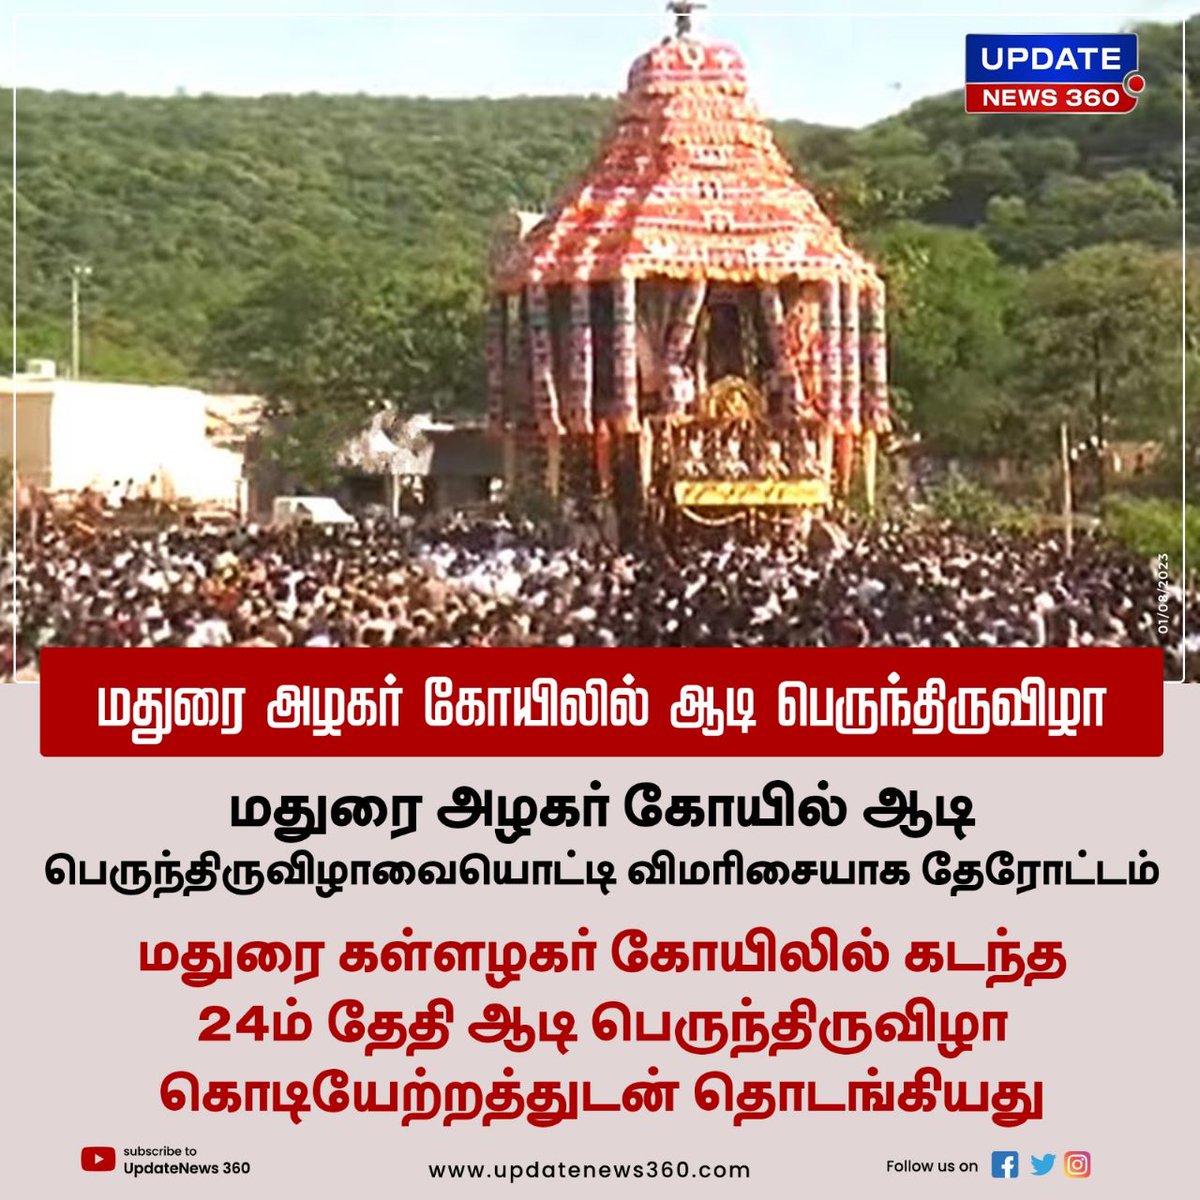 மதுரை அழகர் கோயில் ஆடி பெருந்திருவிழாவையொட்டி வெகு விமரிசையாக தேரோட்டம்

#UpdateNews | #Madurai | #KallalagarTemple | #TempleFestival | #TamilNews | #UpdateNews360